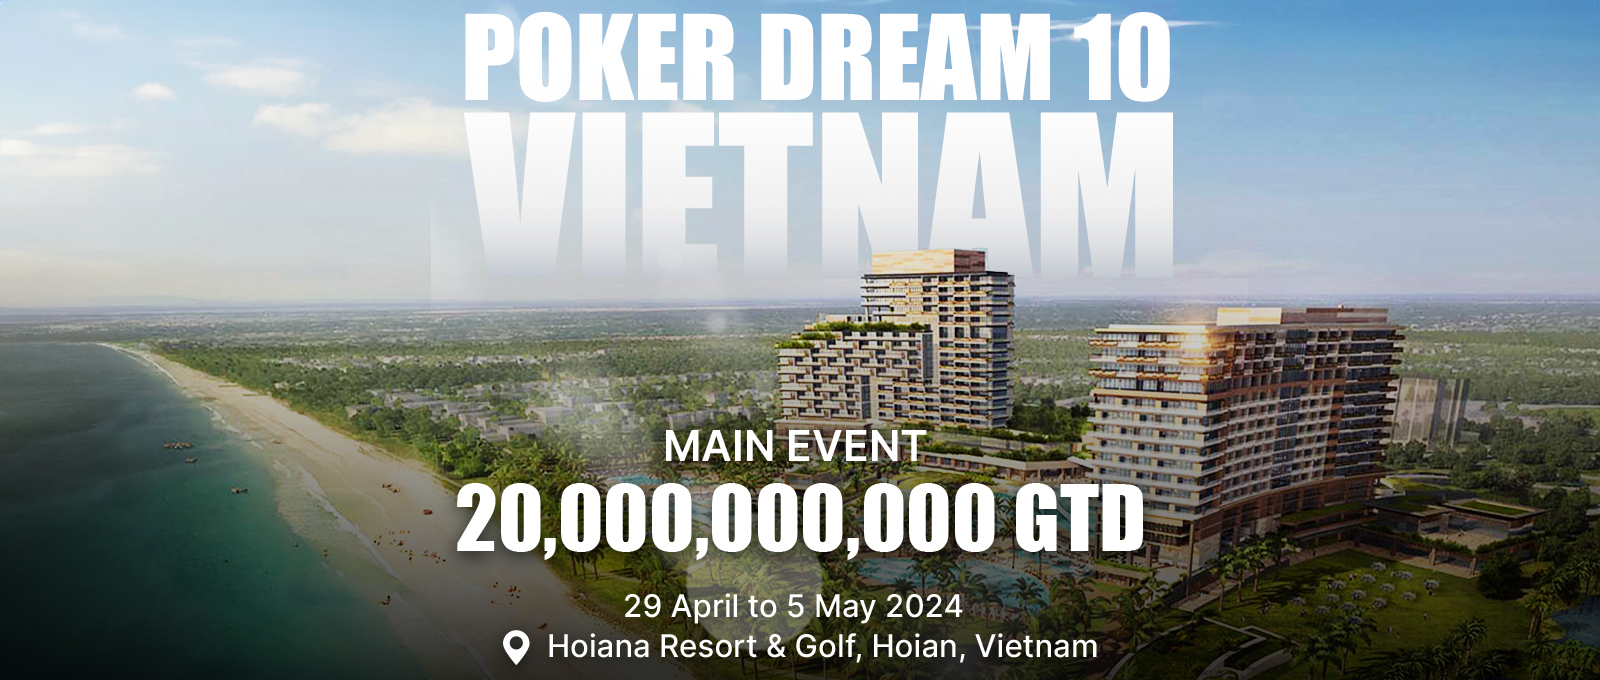 Poker Dream 10 Vietnam: The Ultimate Poker Battle Awaits!